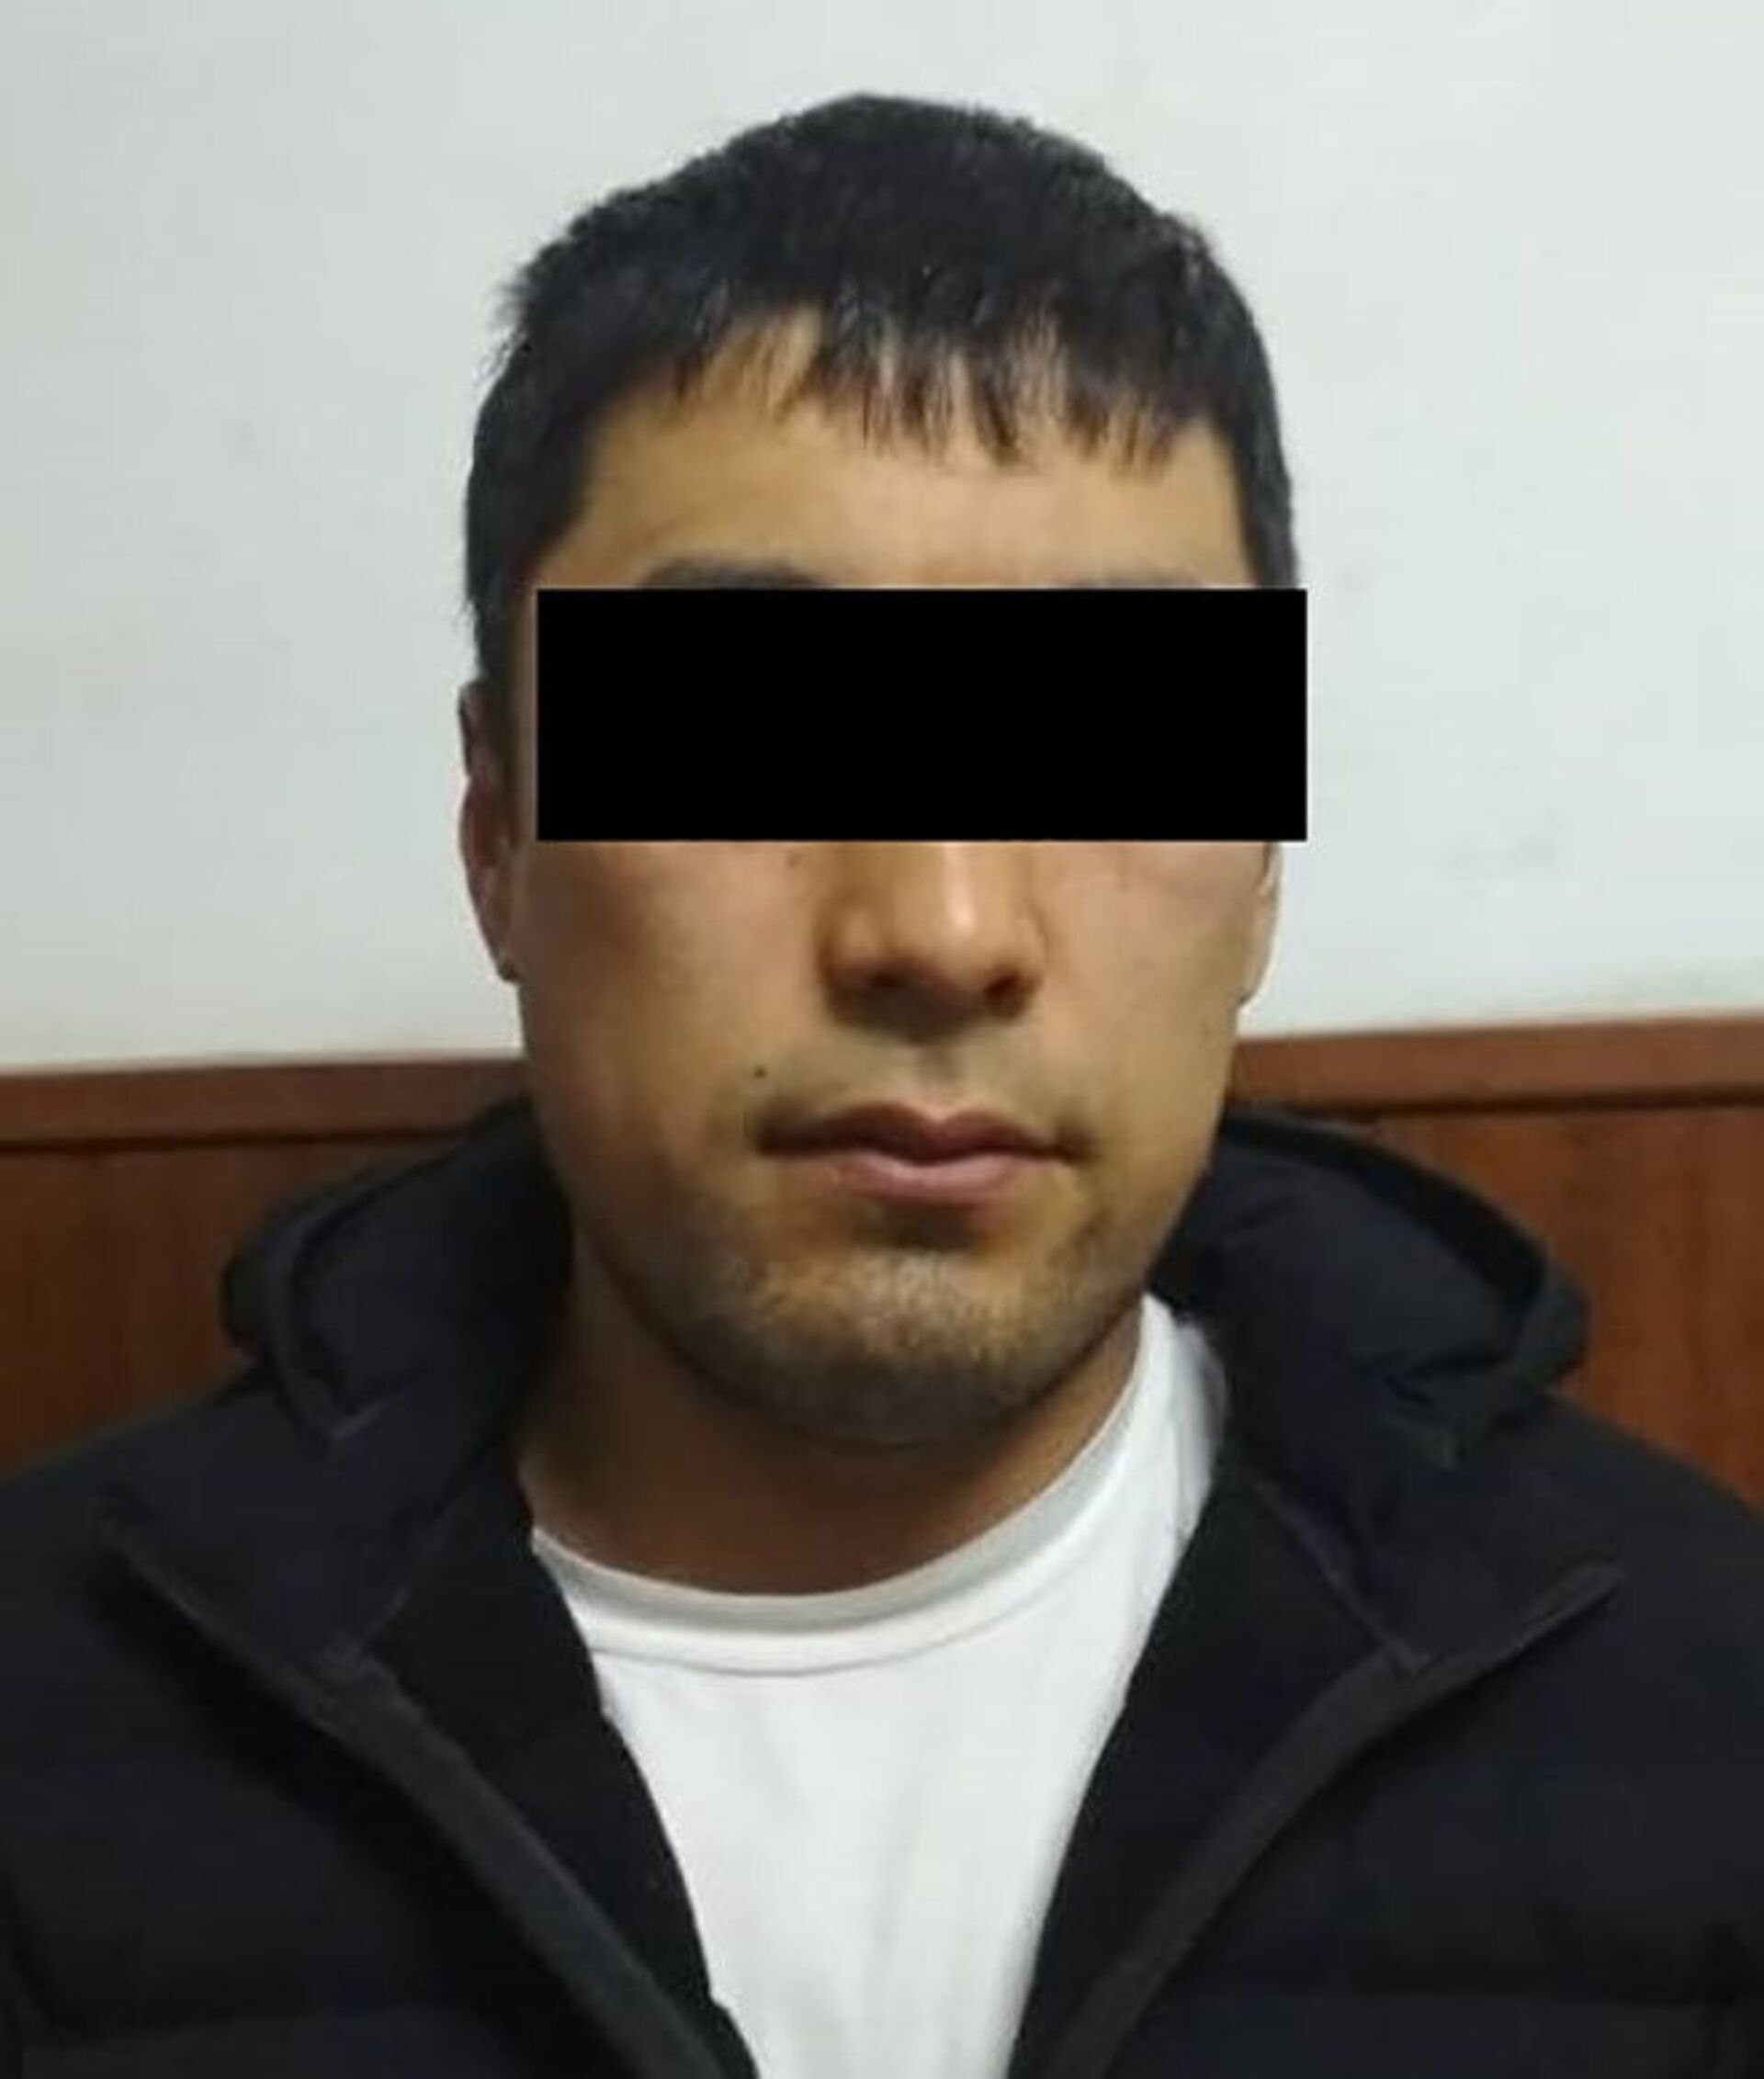 Задержан подозреваемый в угоне трех машин в Бишкеке — фото - Sputnik Кыргызстан, 1920, 04.02.2021